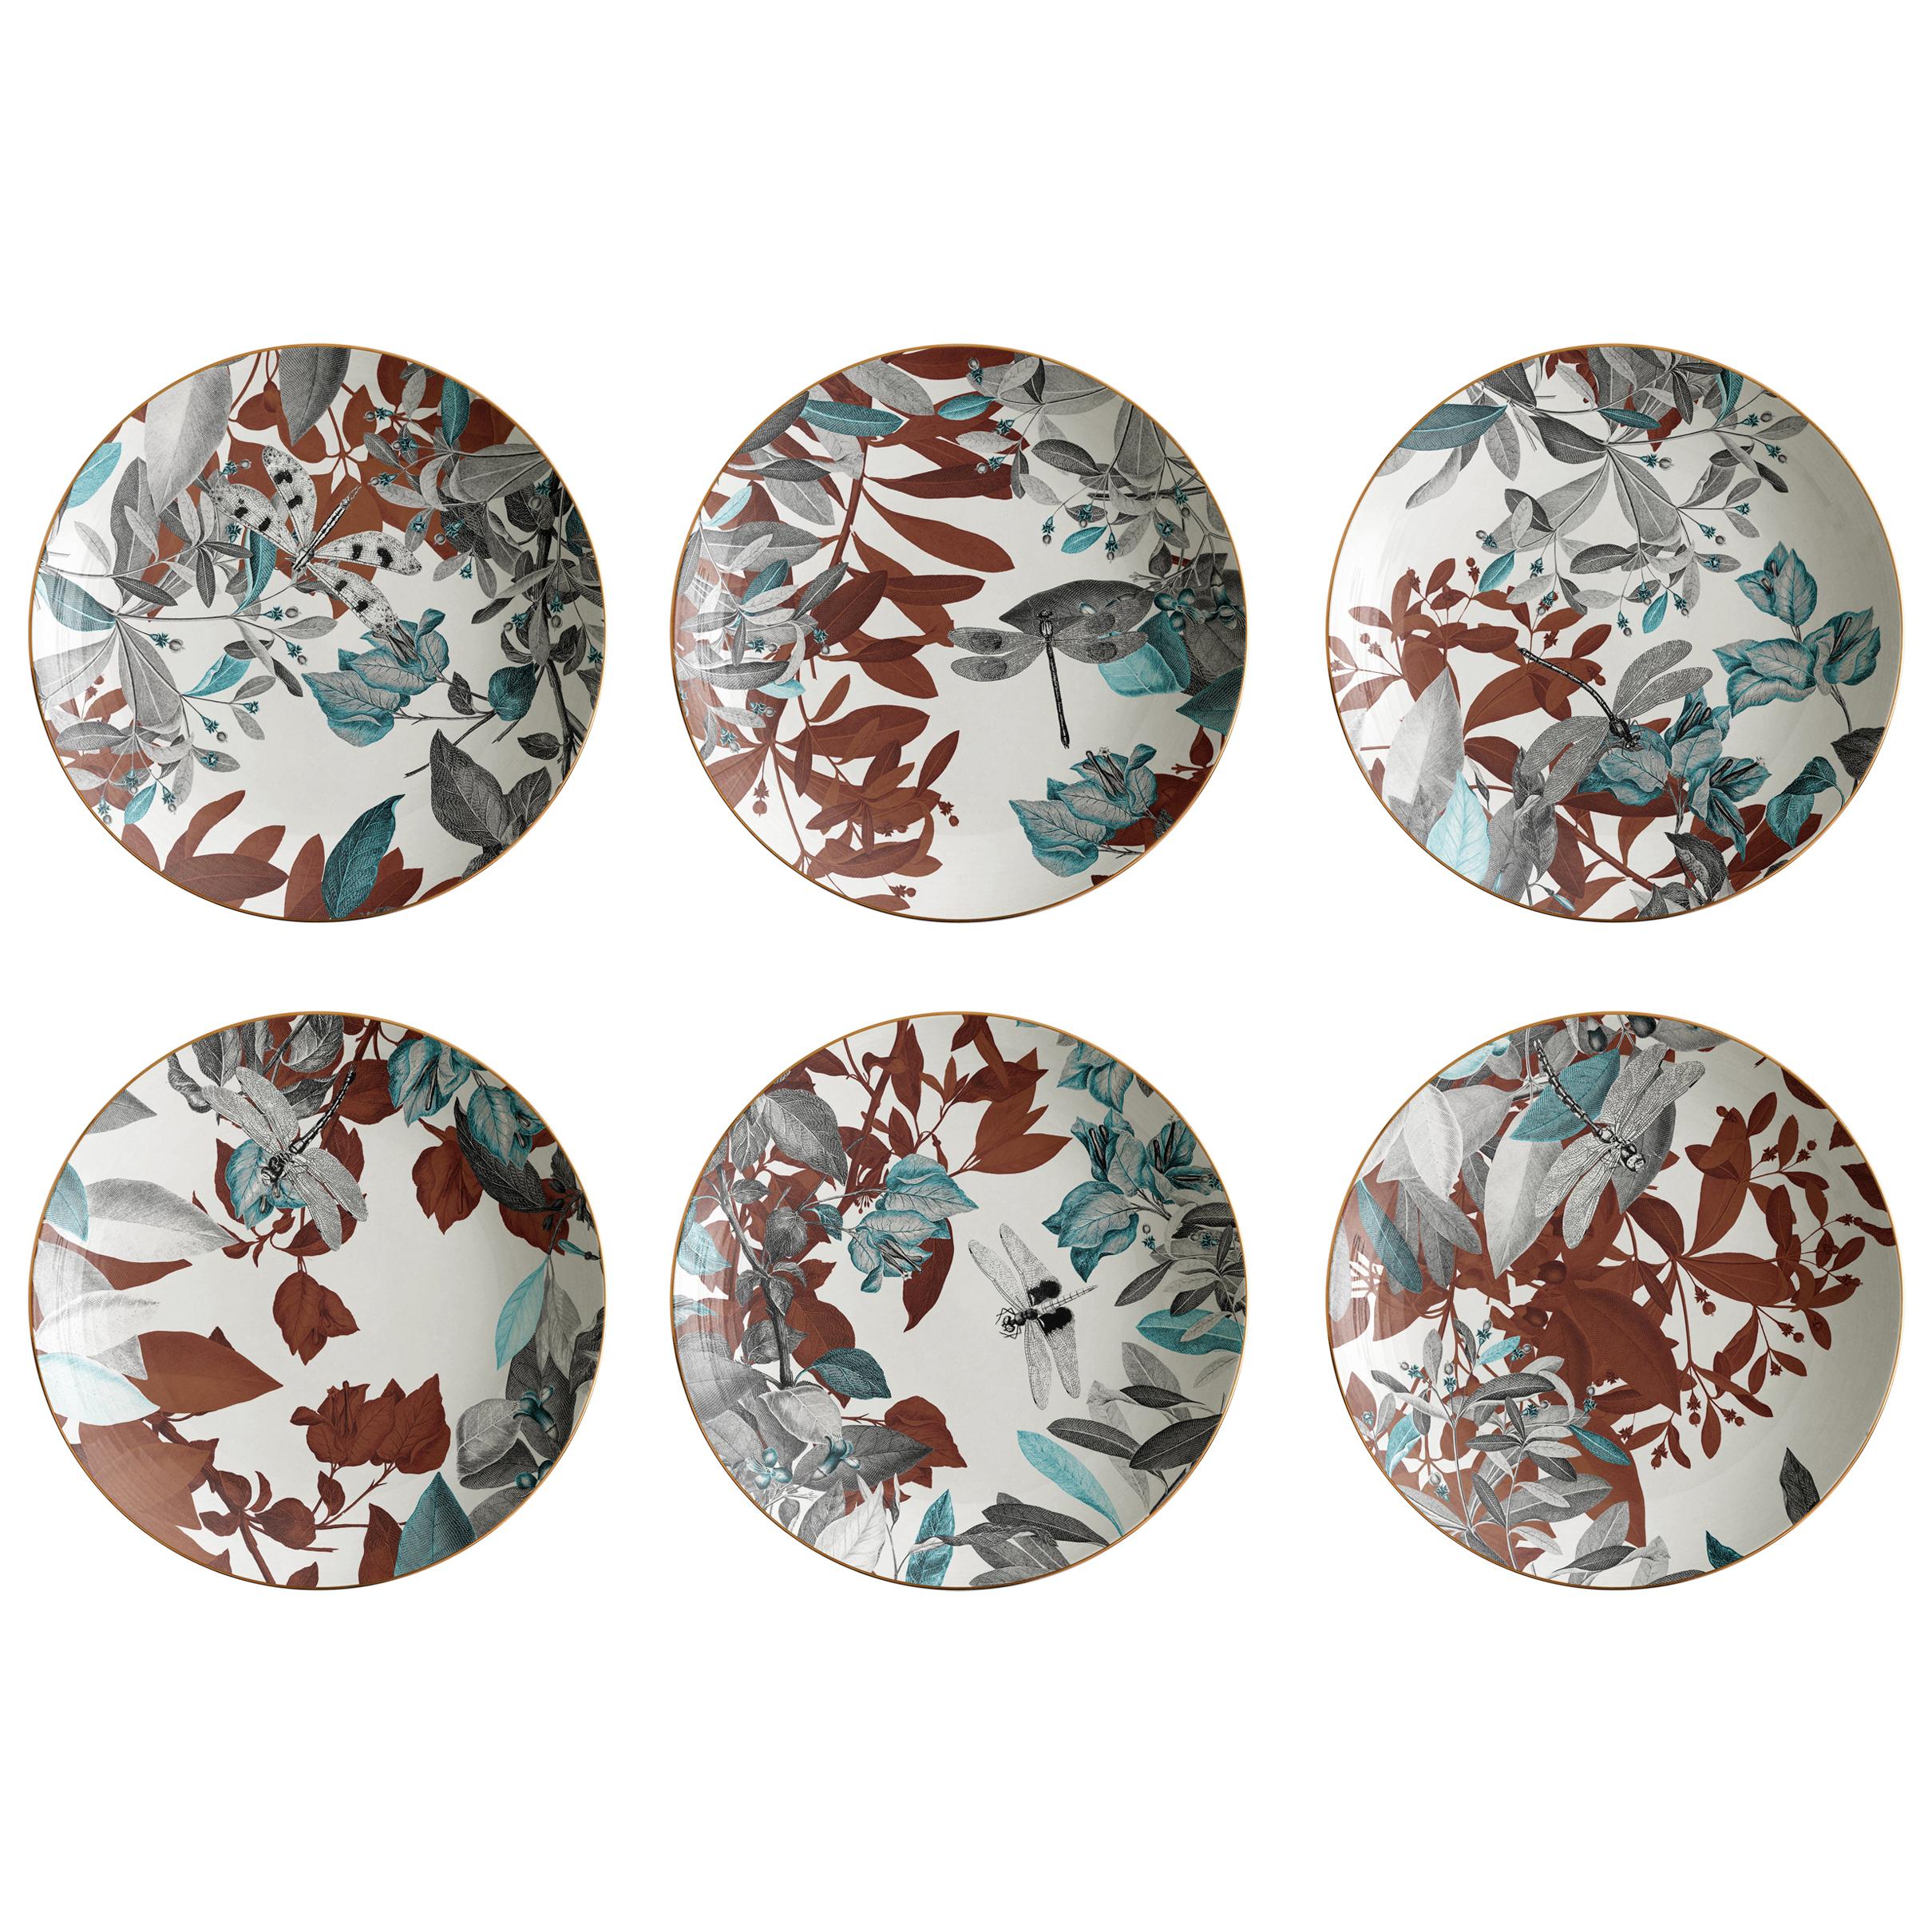 Black Dragon, Six Contemporary Porcelain soup plates with Decorative Design